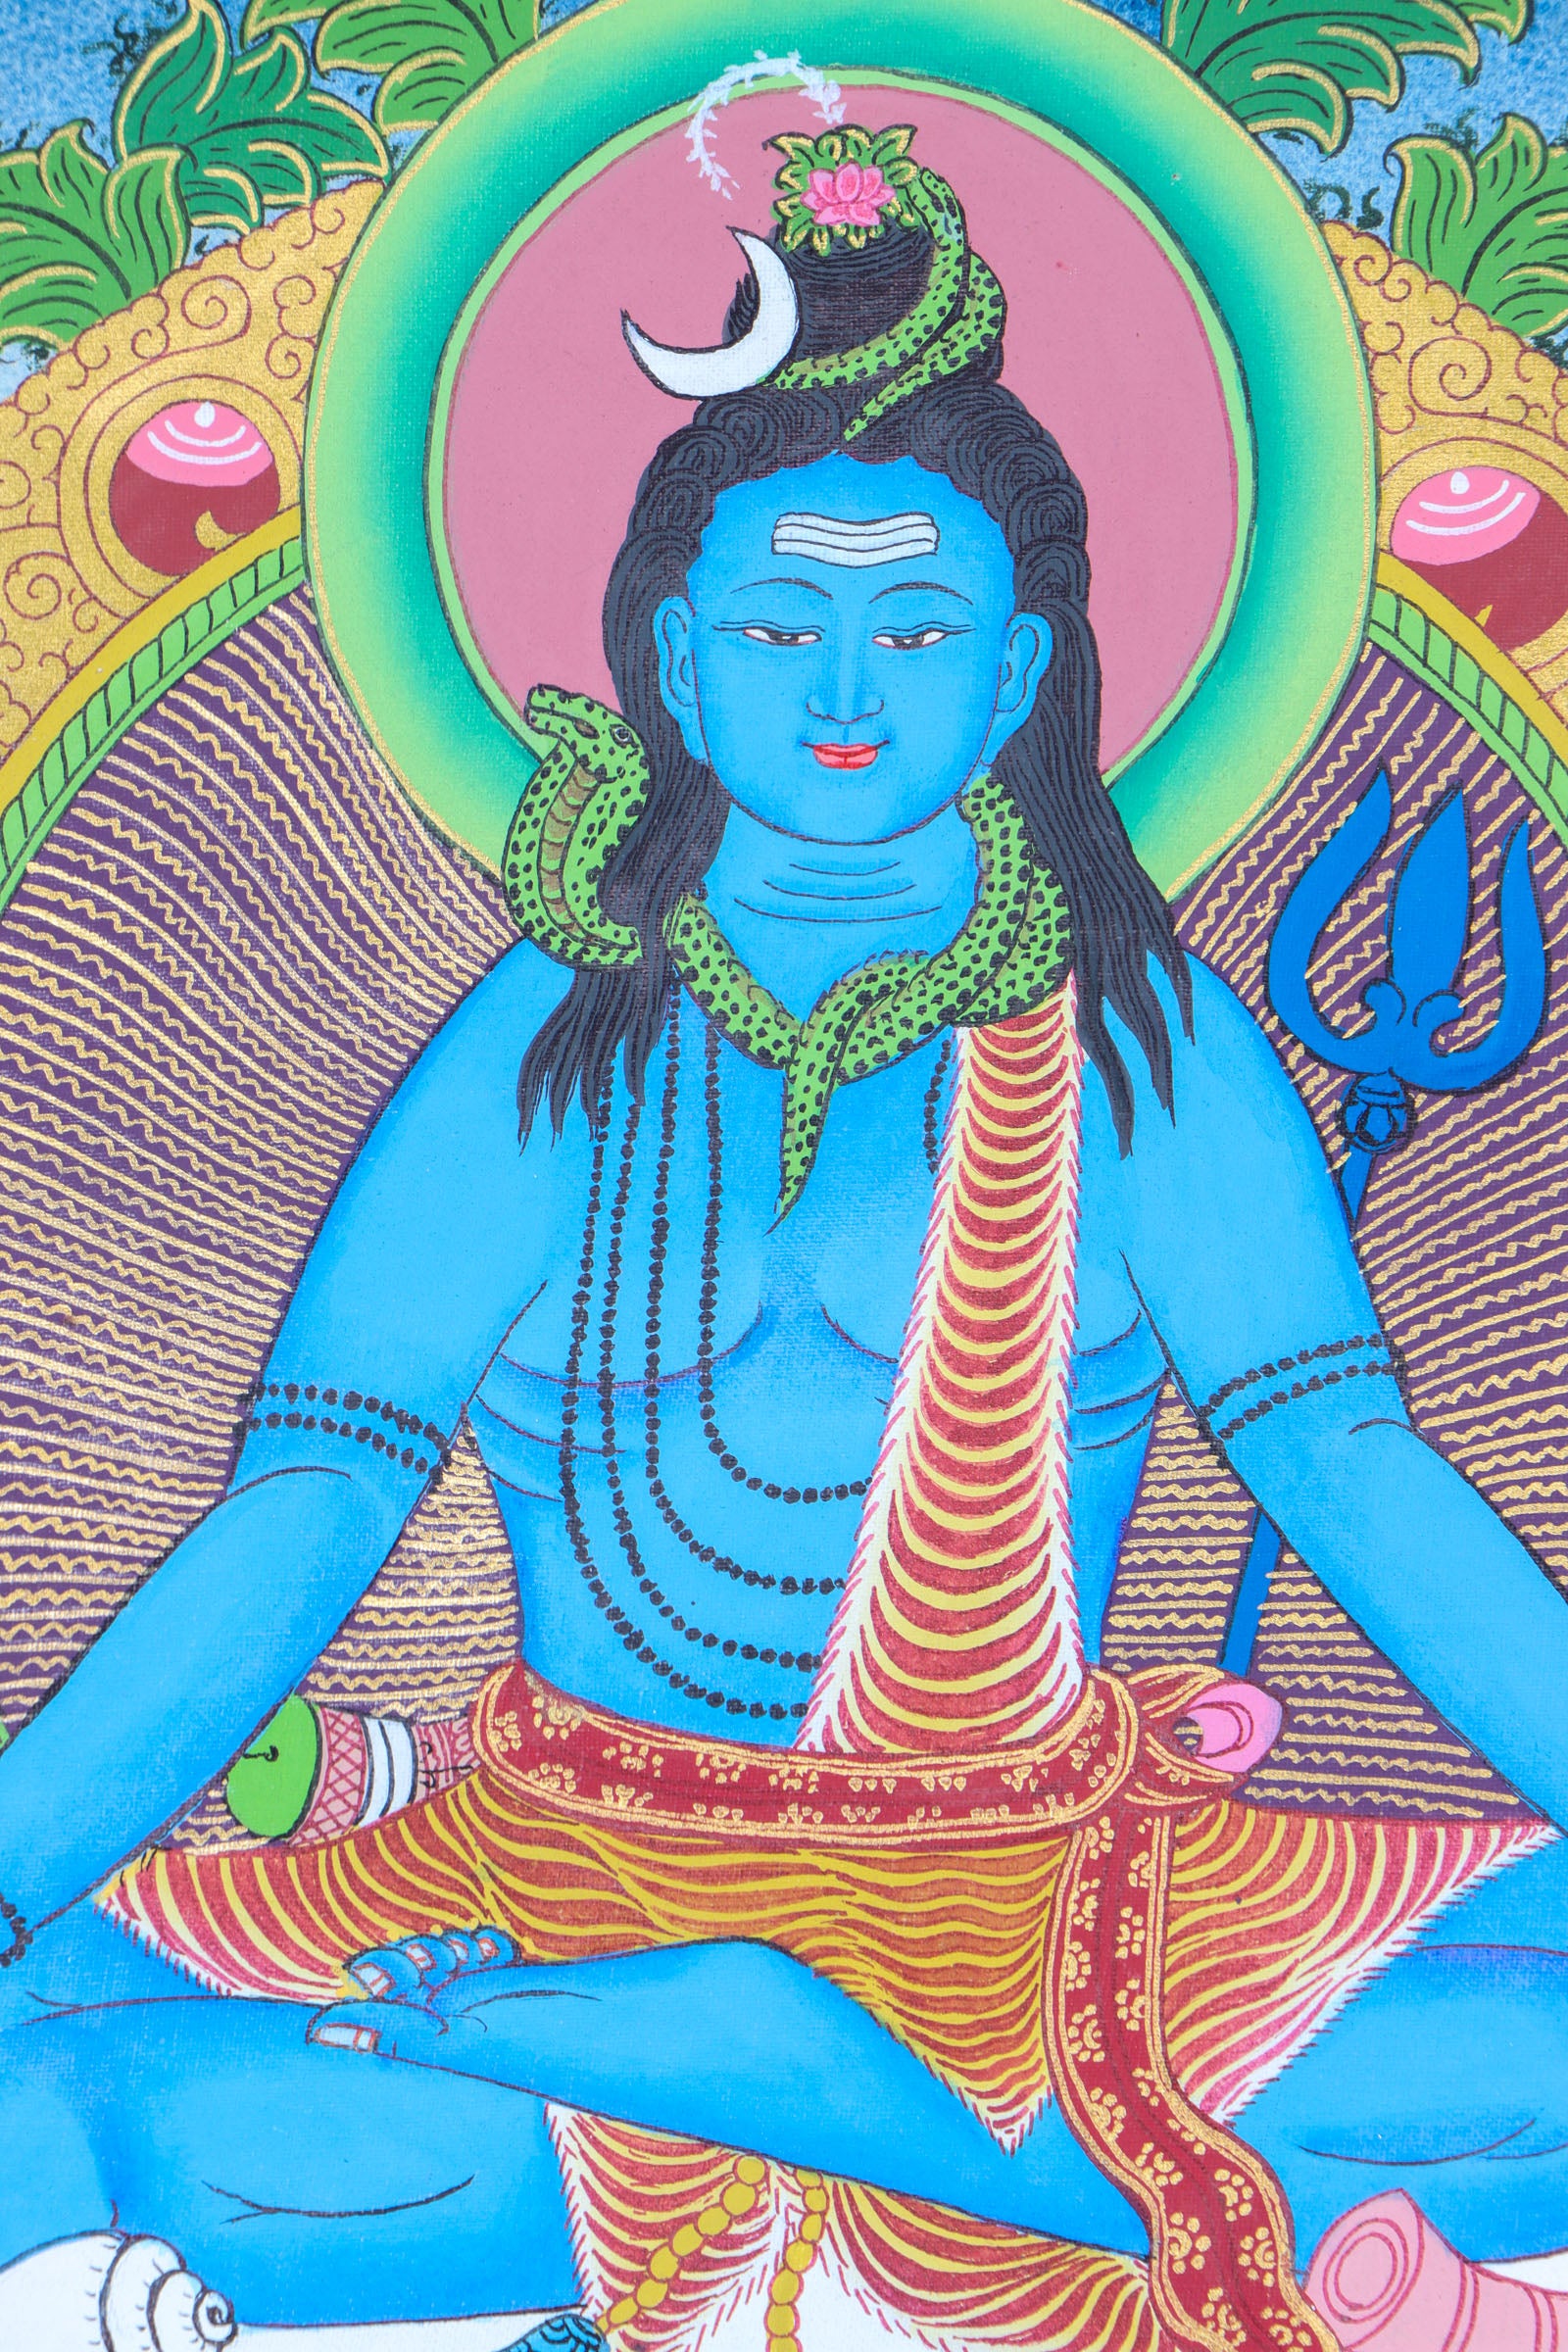 Shiva Thangka for prayer and devotion.